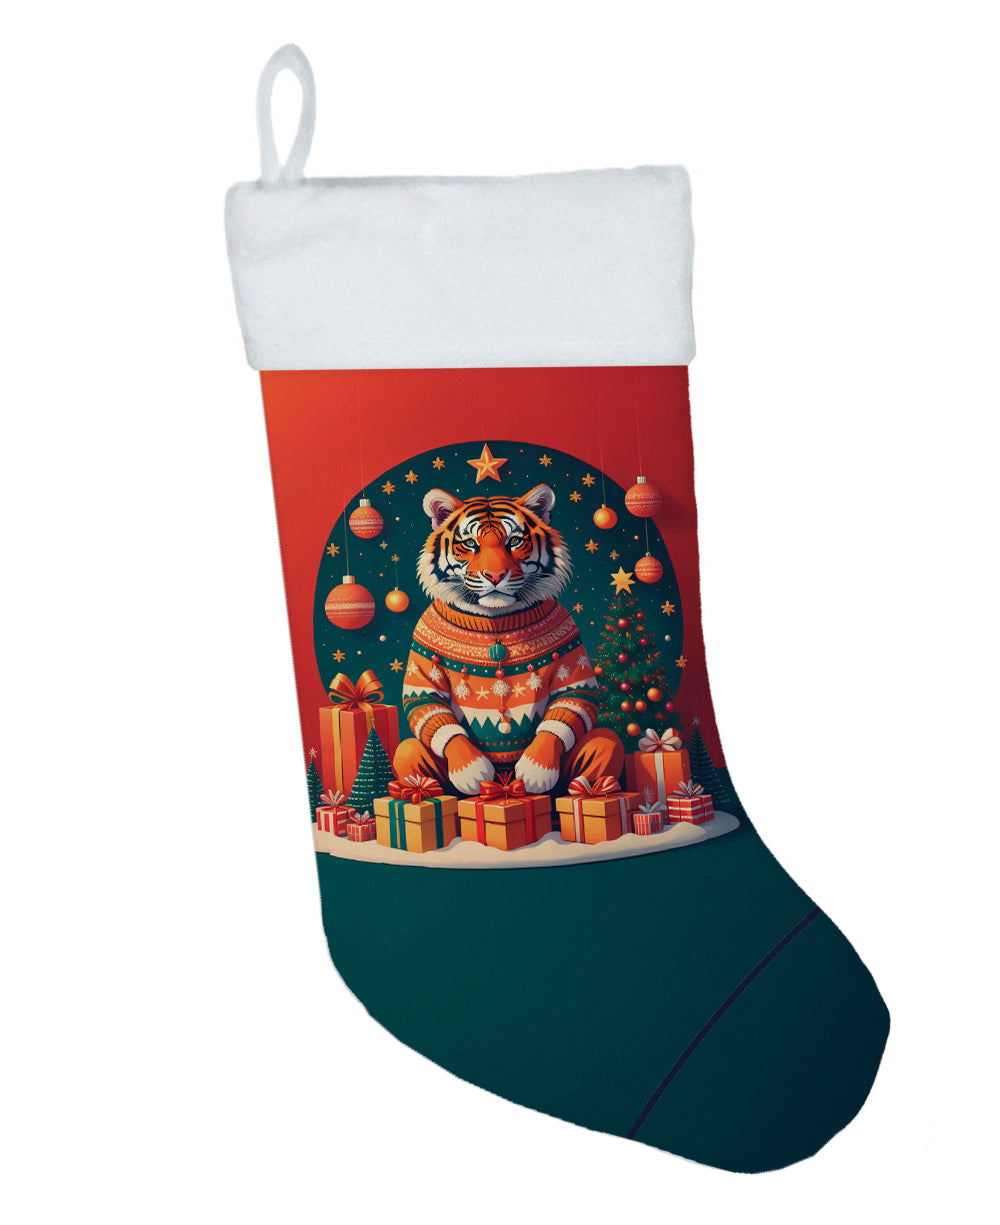 Buy this Tiger Christmas Christmas Stocking